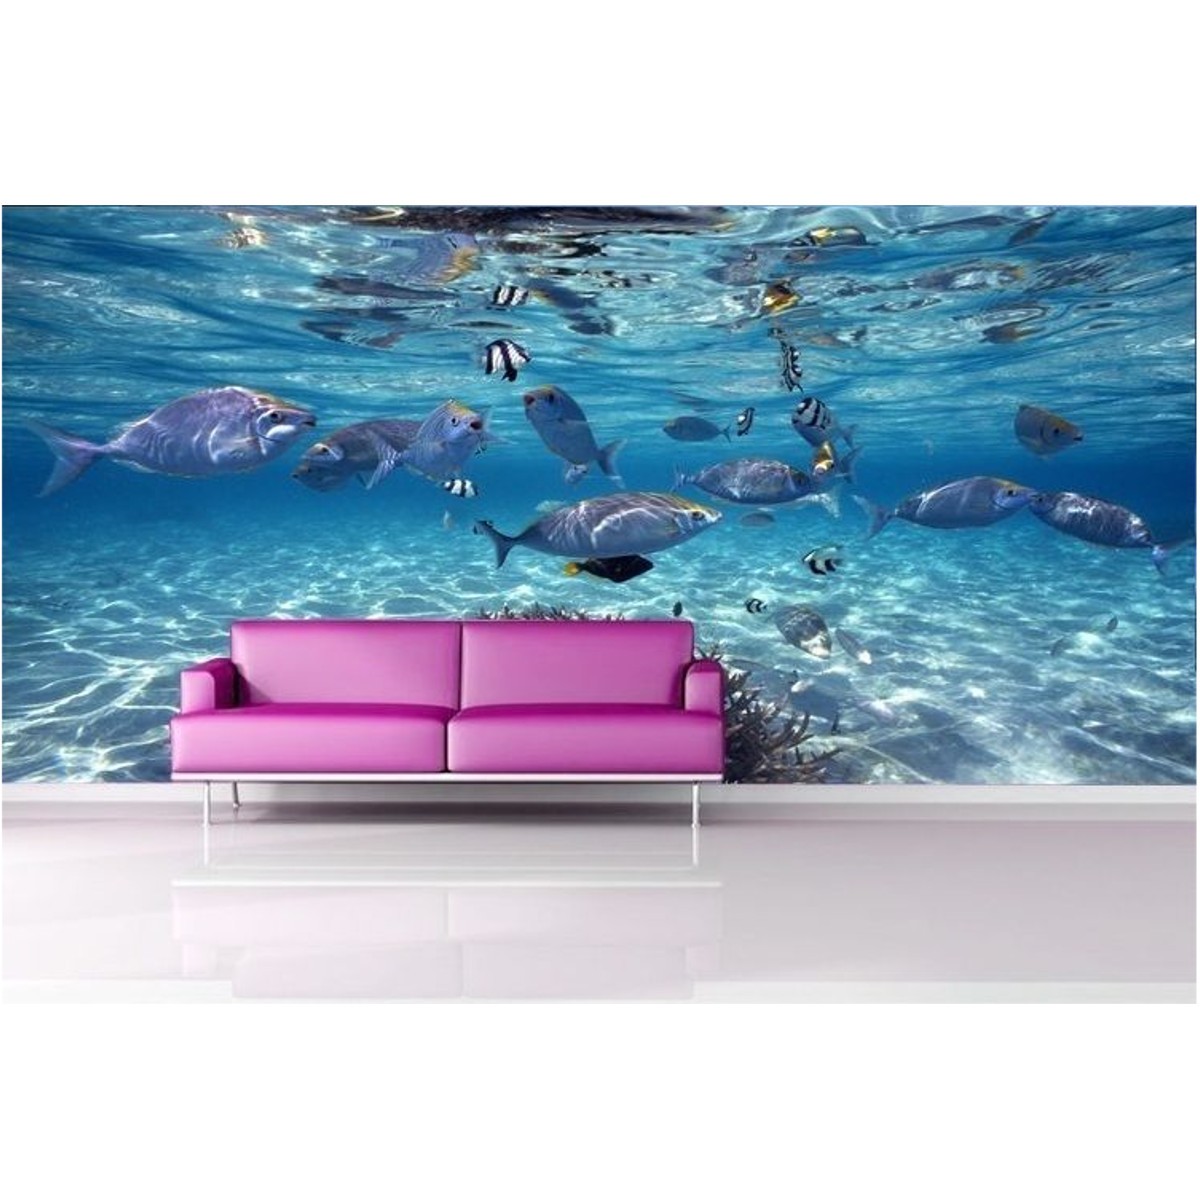 Custom 3d Wall Under Water Murals - HD Wallpaper 